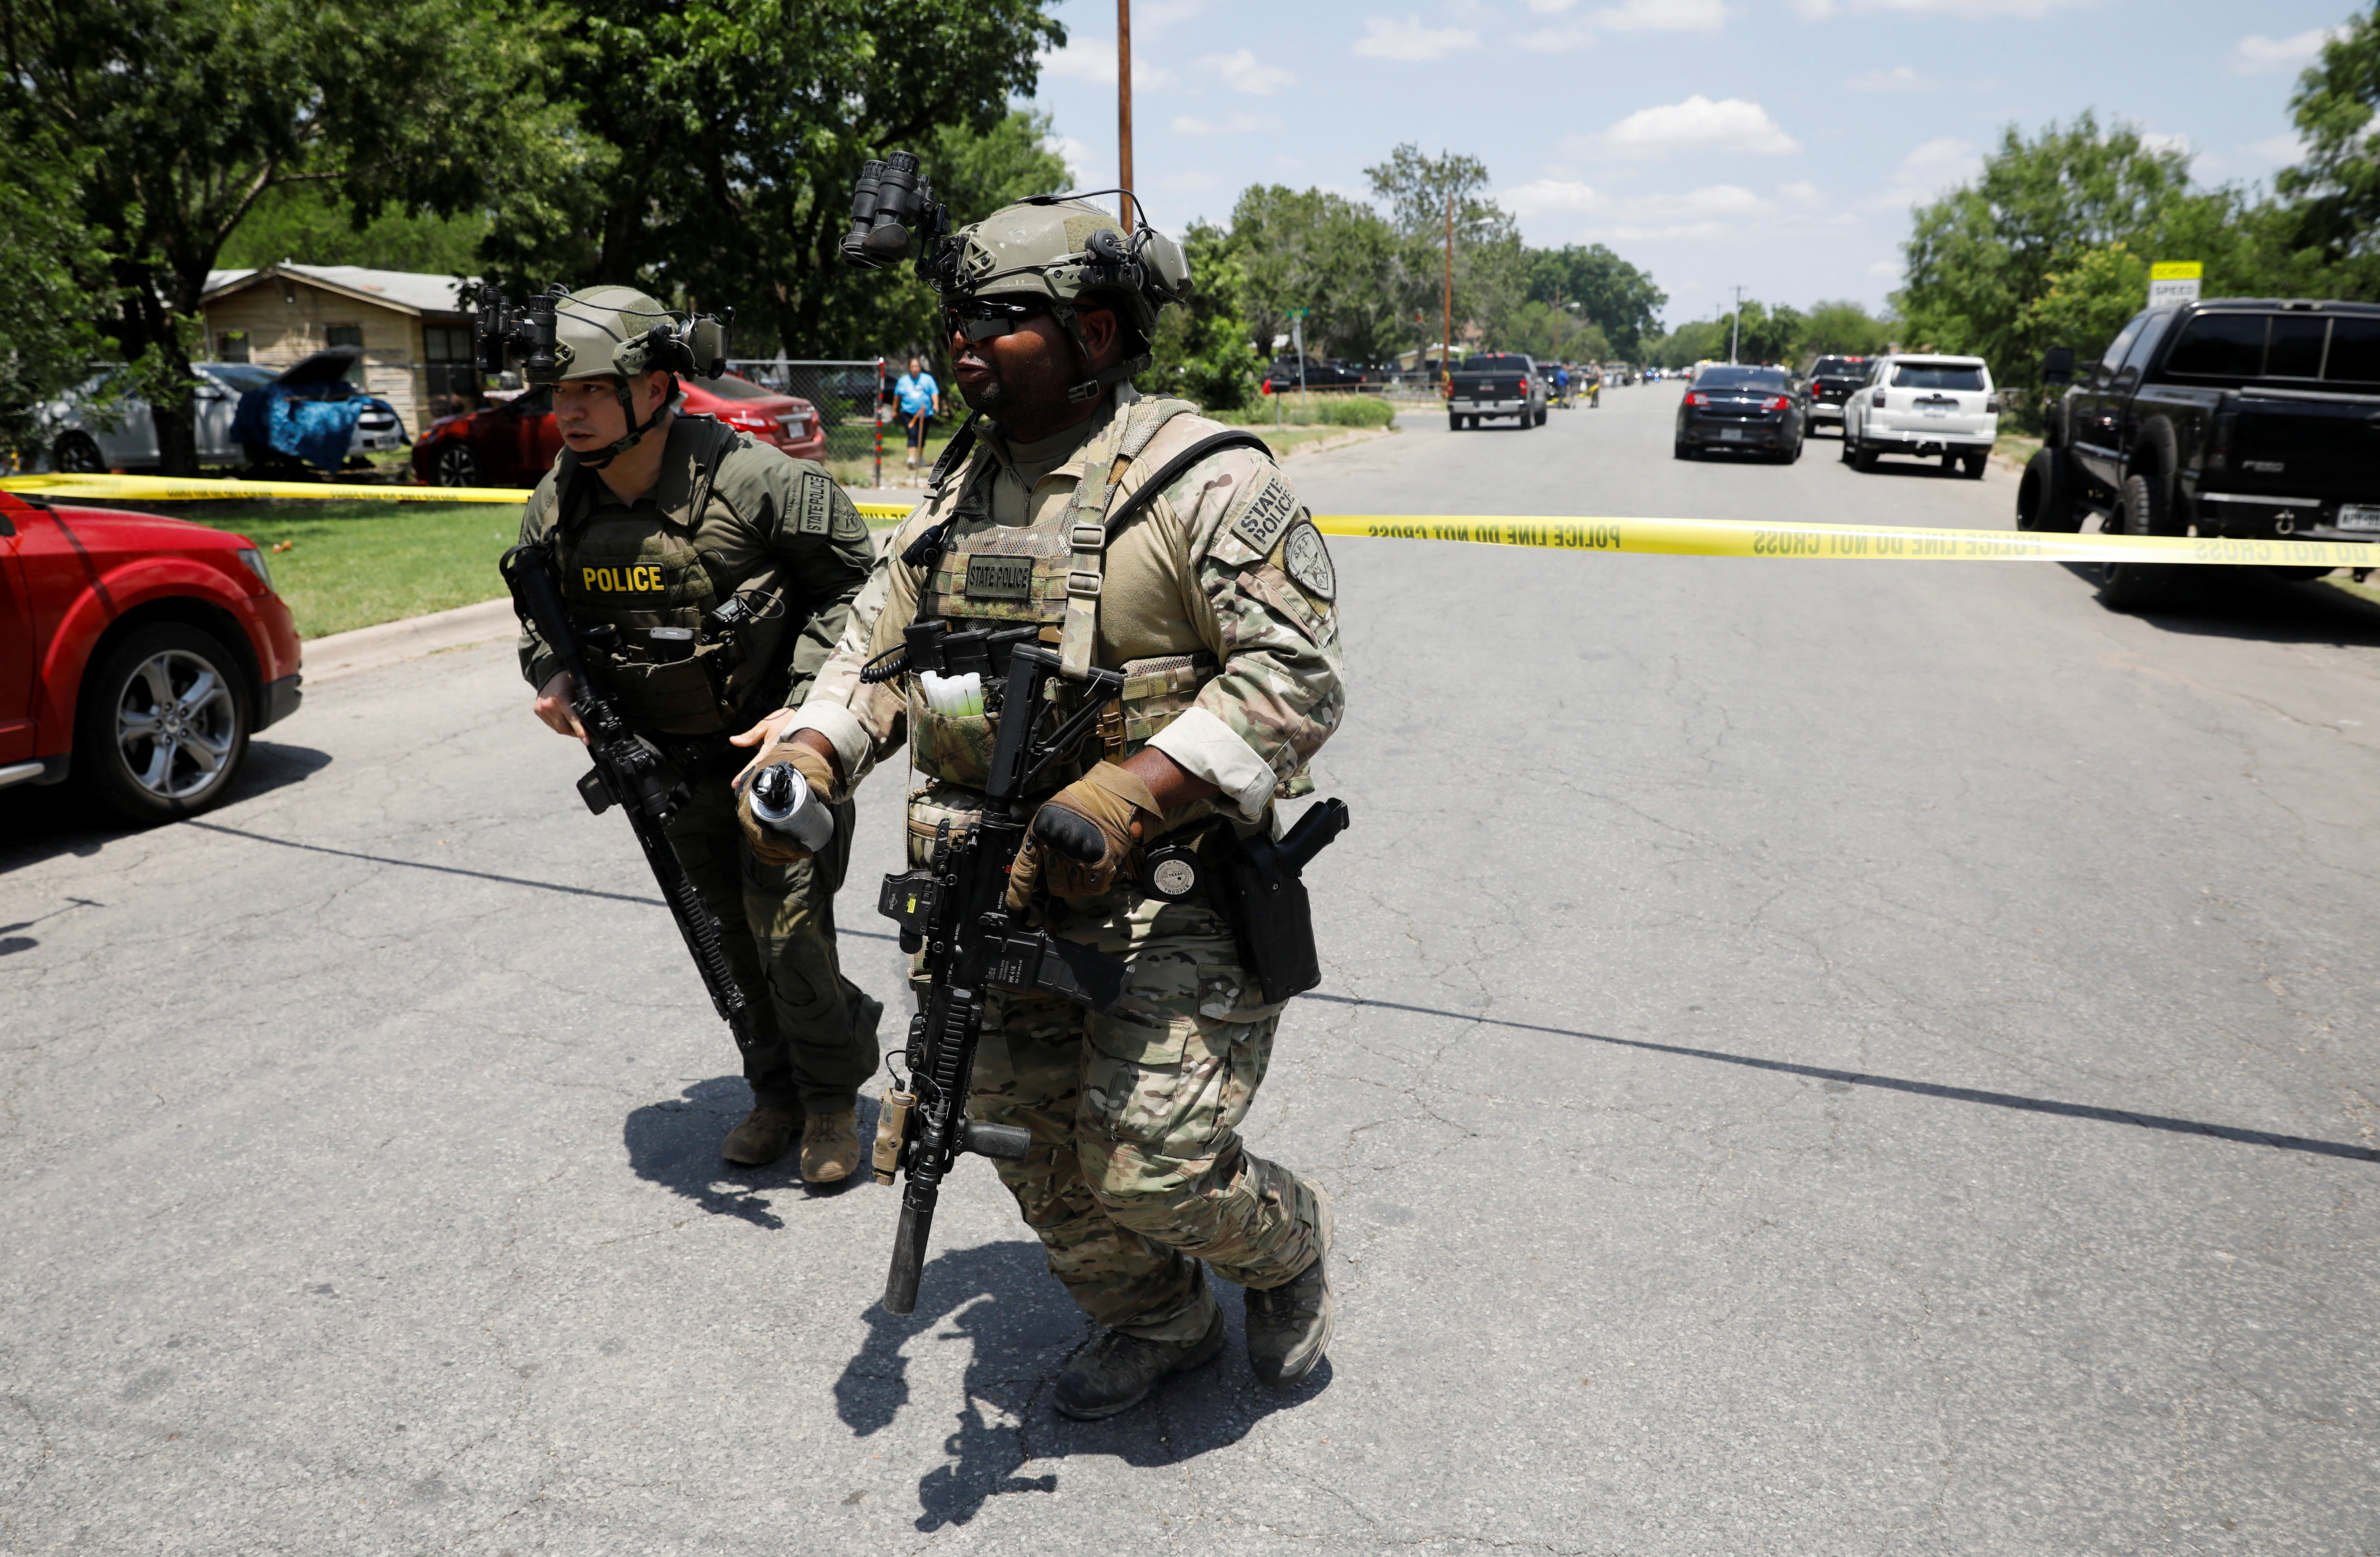 Autorità sulla scena di una sparatoria vicino alla Robb Elementary School di Ovaldi, Texas, USA, 24 maggio 2022. REUTERS/Marco bello